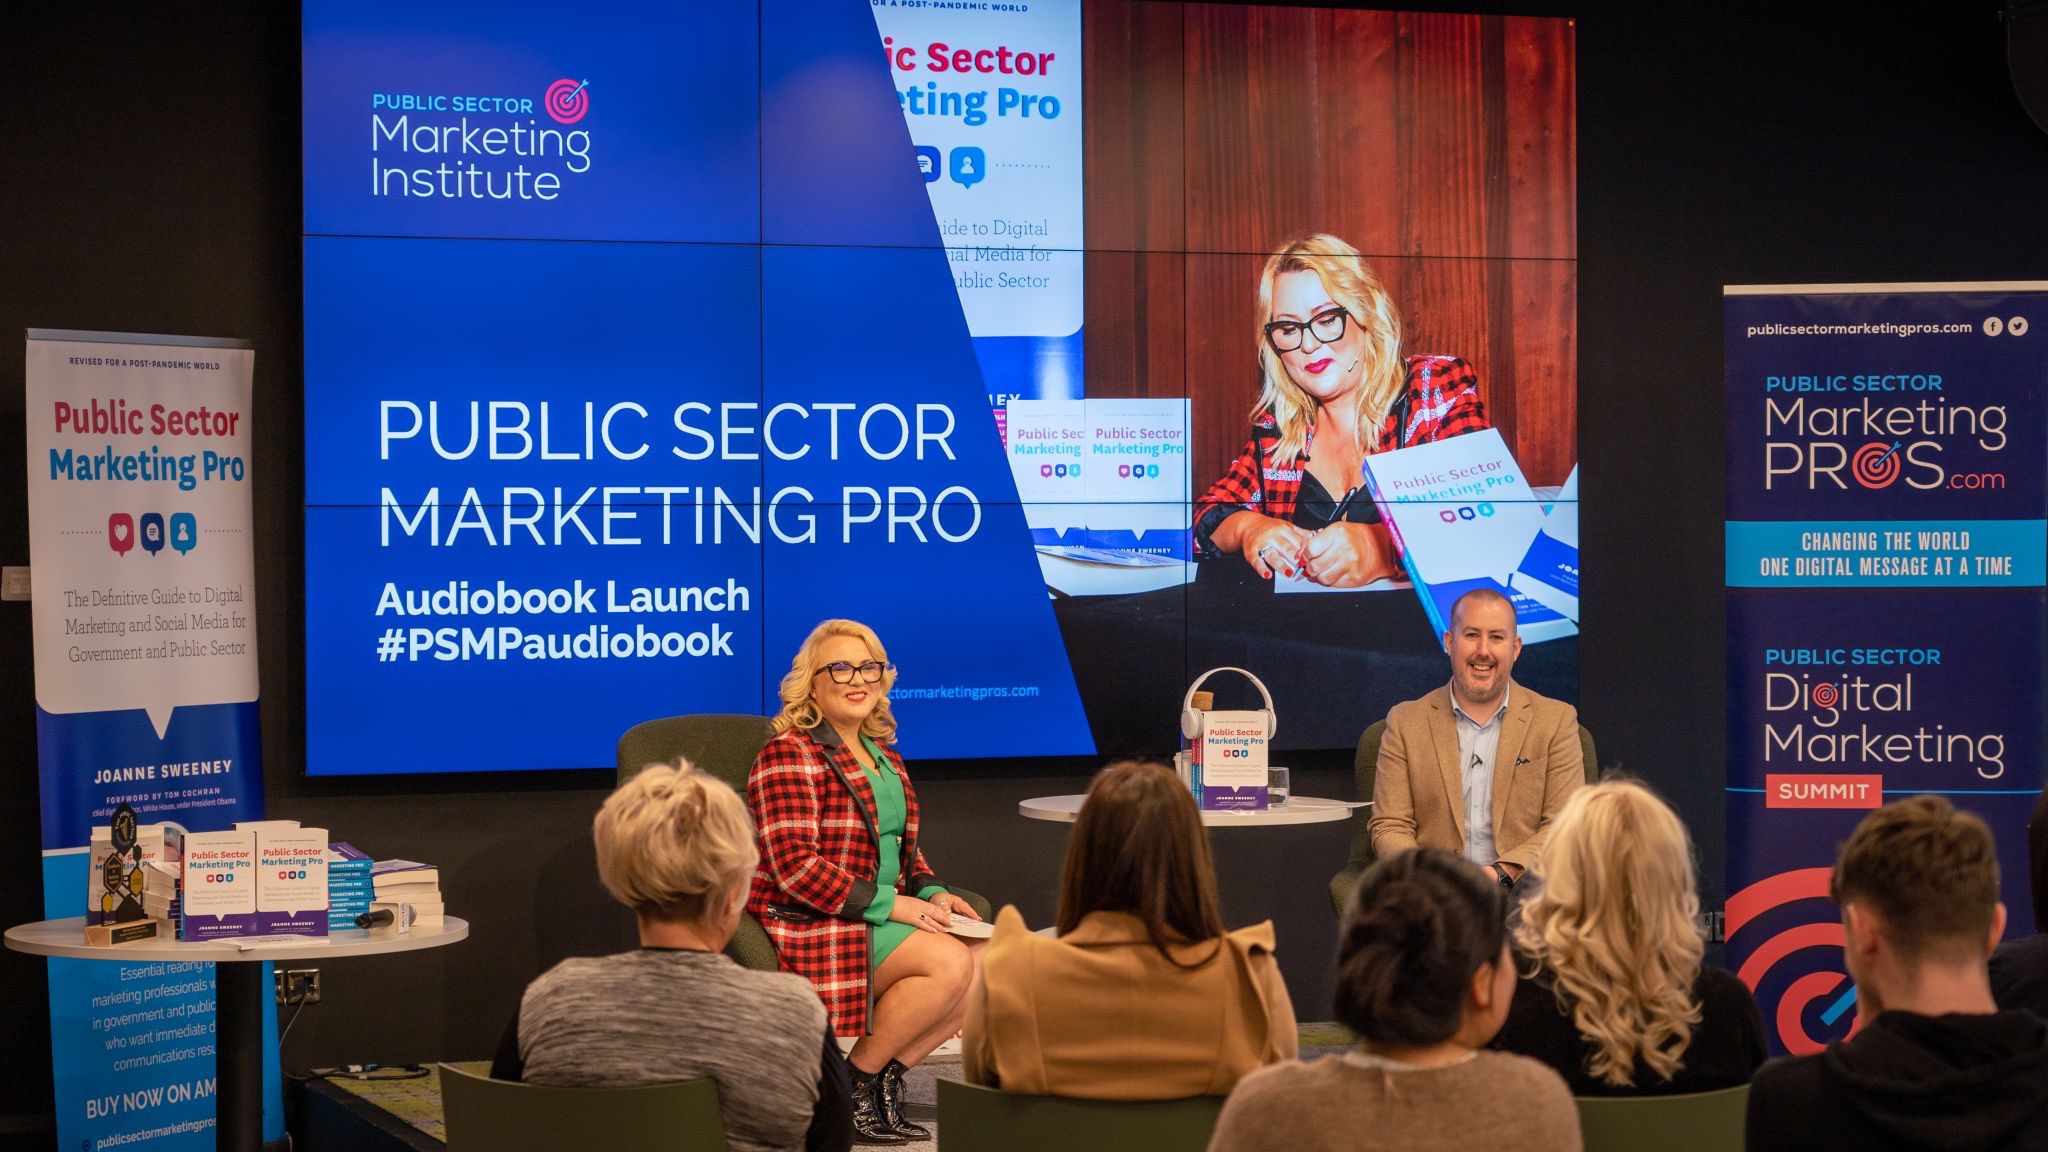 Public Sector Marketing Pro Audiobook launch by Joanne Sweeney